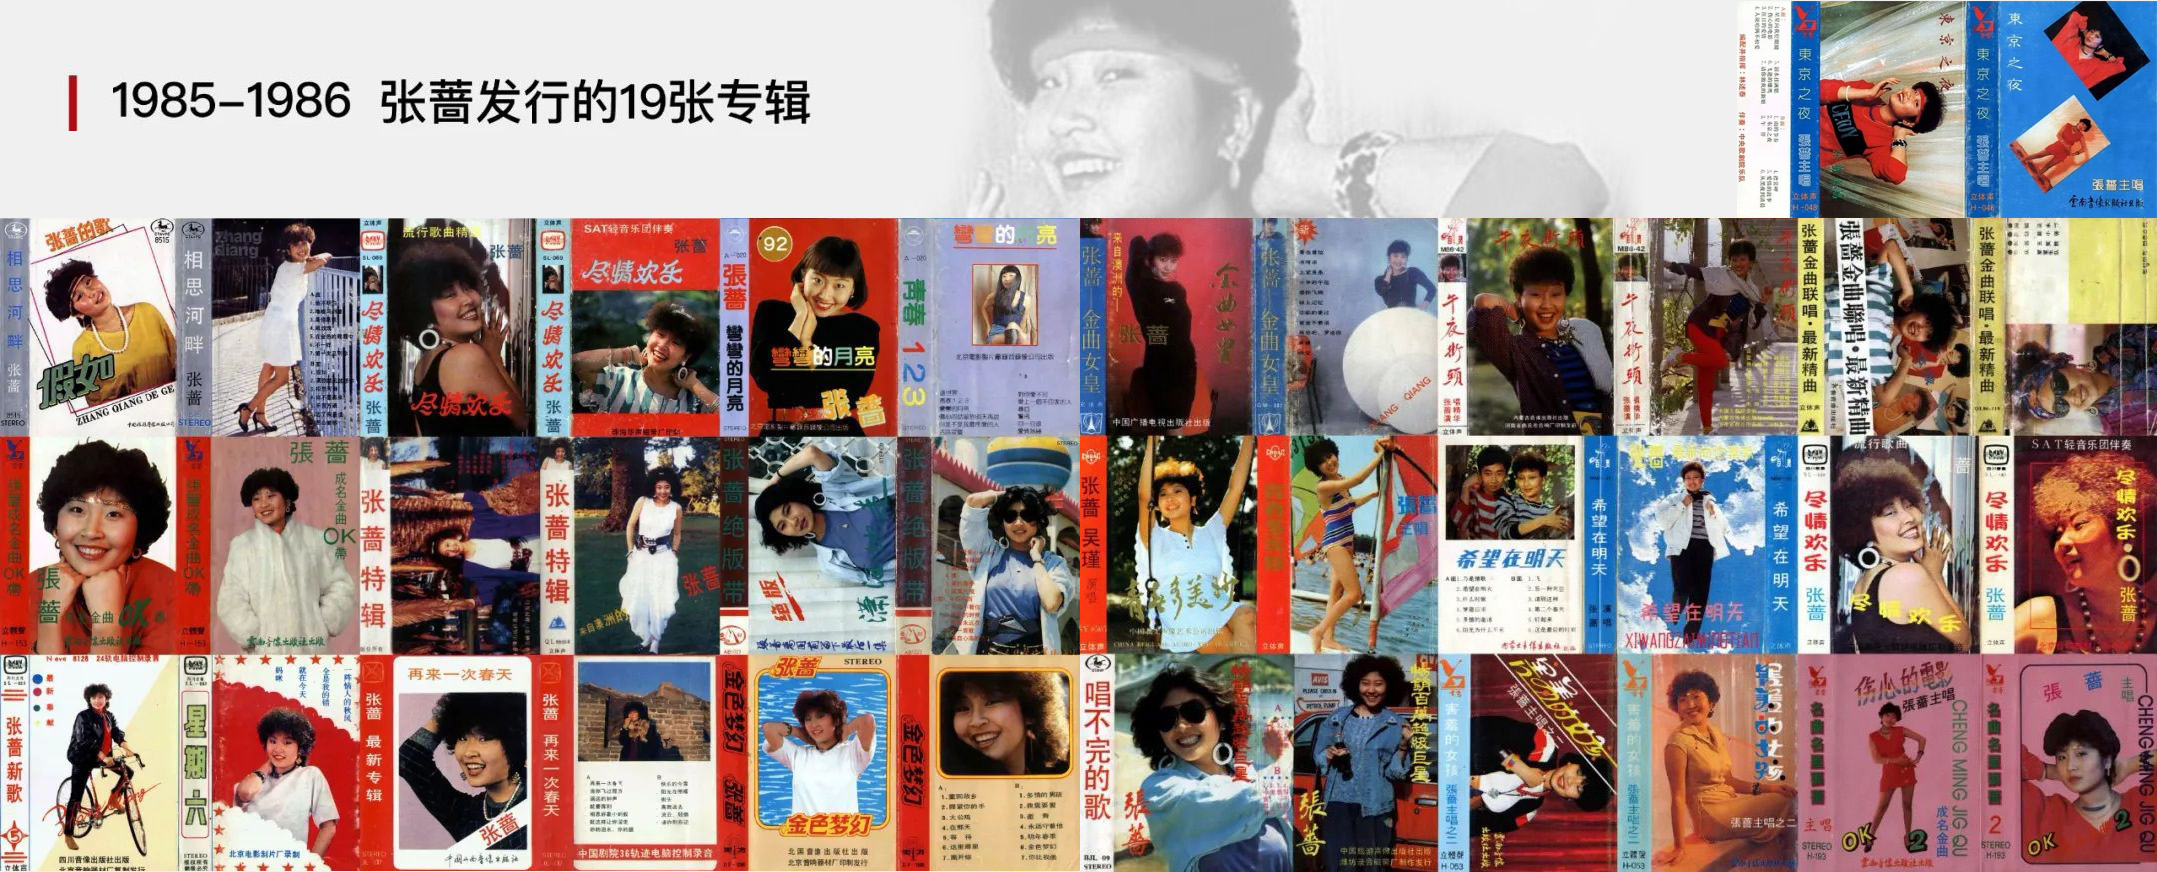 1985-1986张蔷发行的19张专辑.jpg